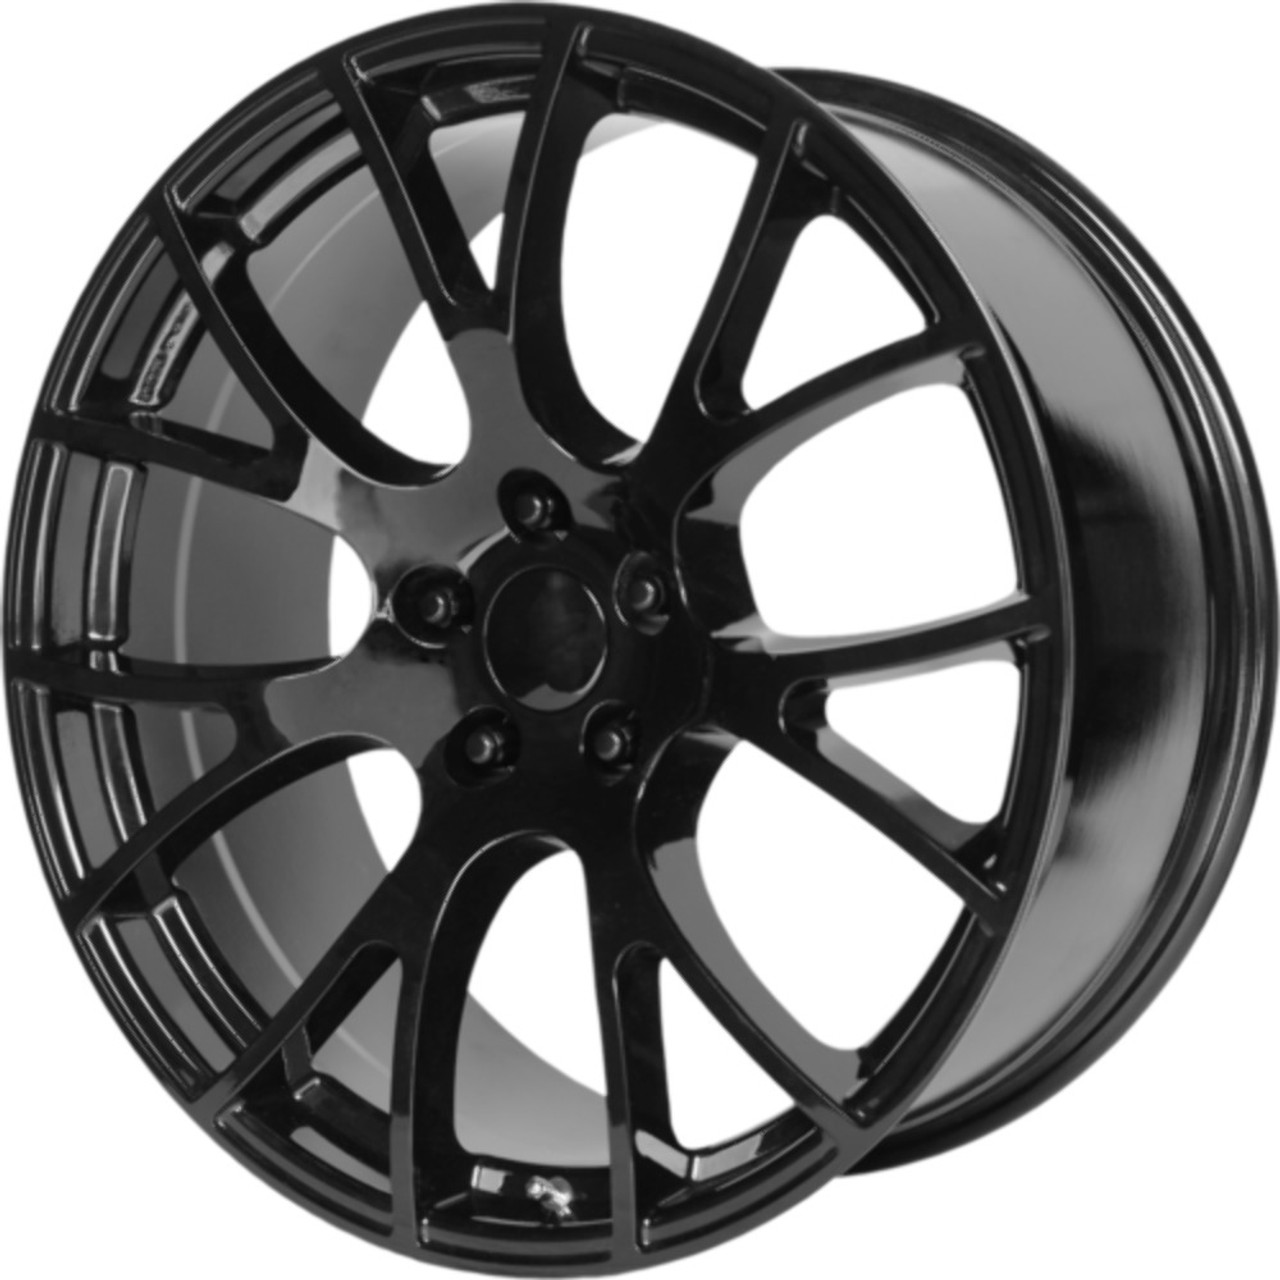 Set 4 Performance Replicas PR161 20x10 5x115 Gloss Black Wheels 20" 18mm Rims